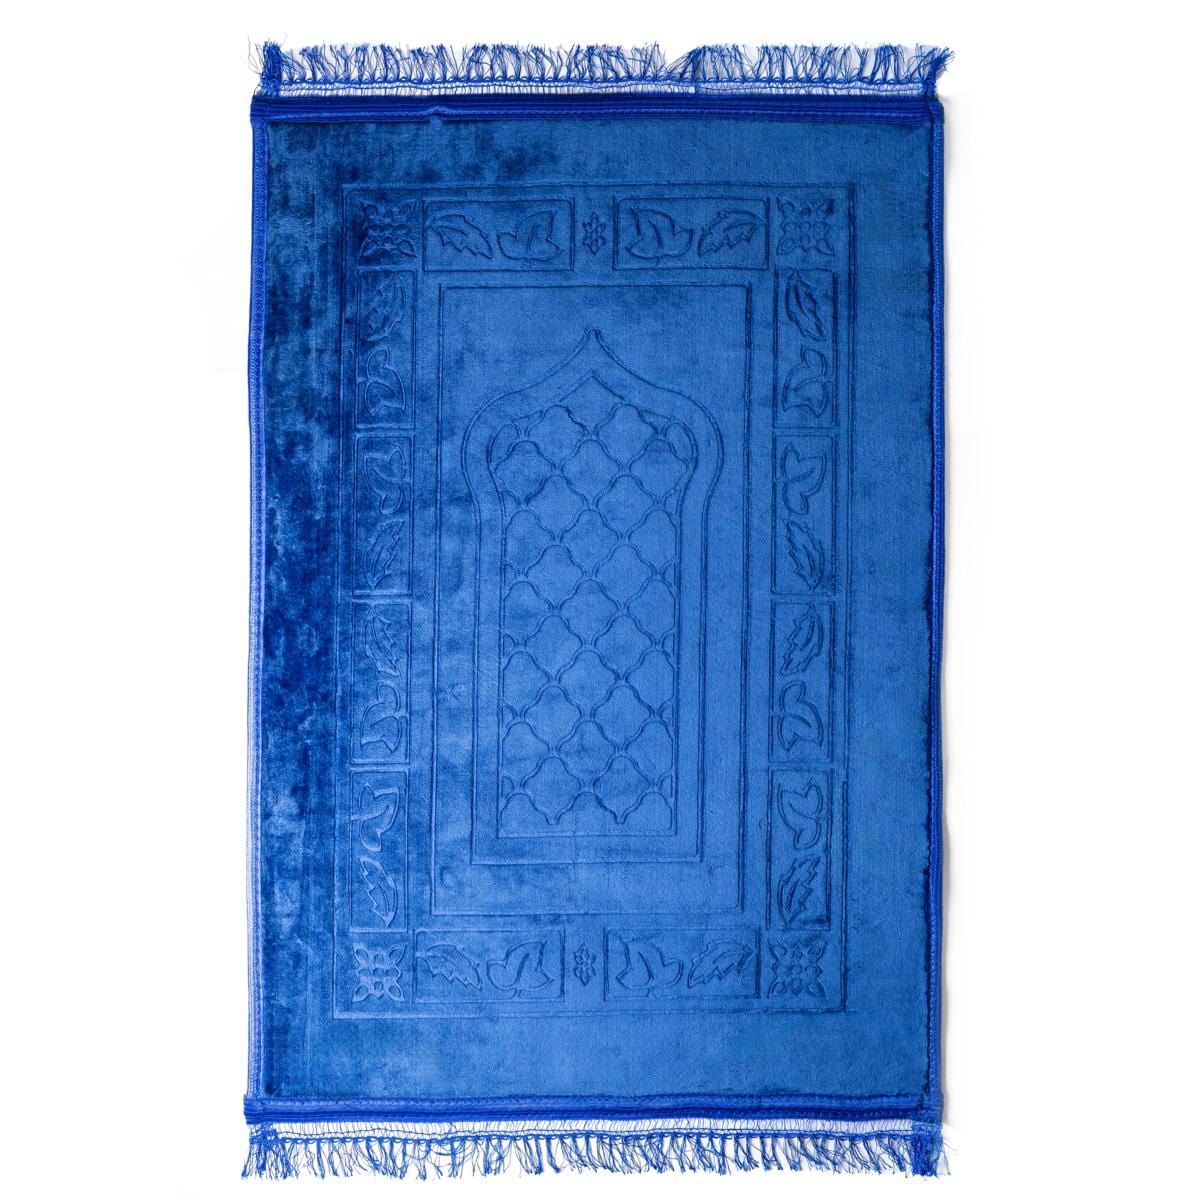 DeenSouvenir Eleganter Gebetsteppich in Majestätischem Mitternachtsblau: Weich, Sicher & Dick